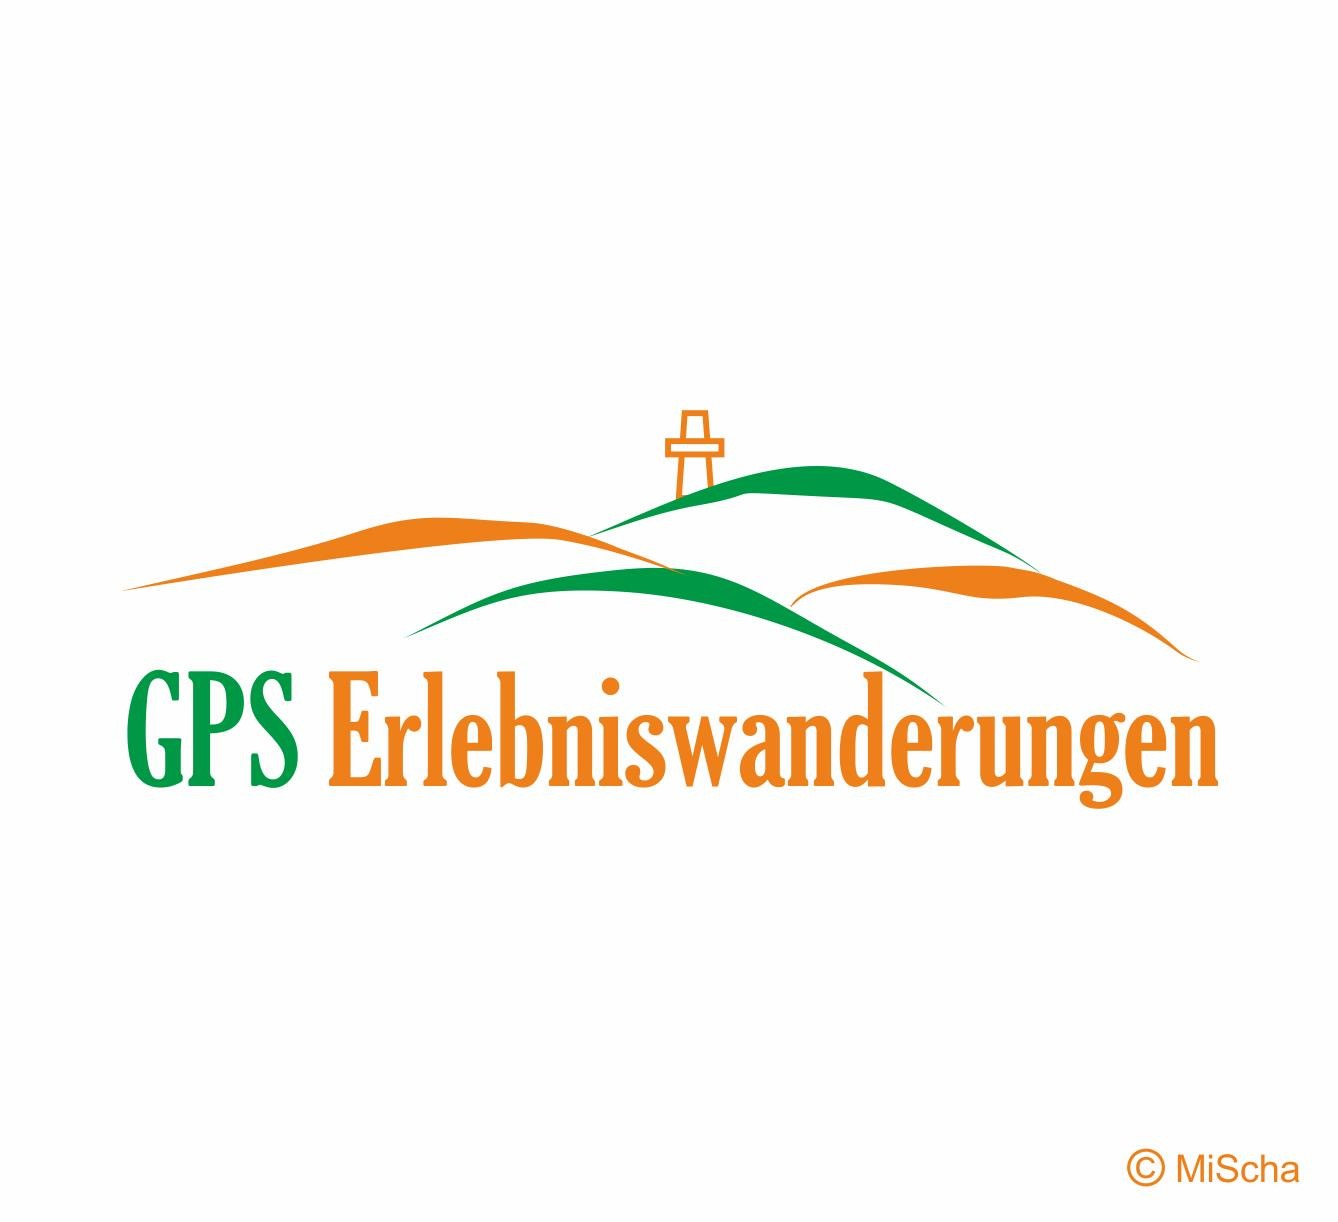 GPS Erlebniswanderungen Logo